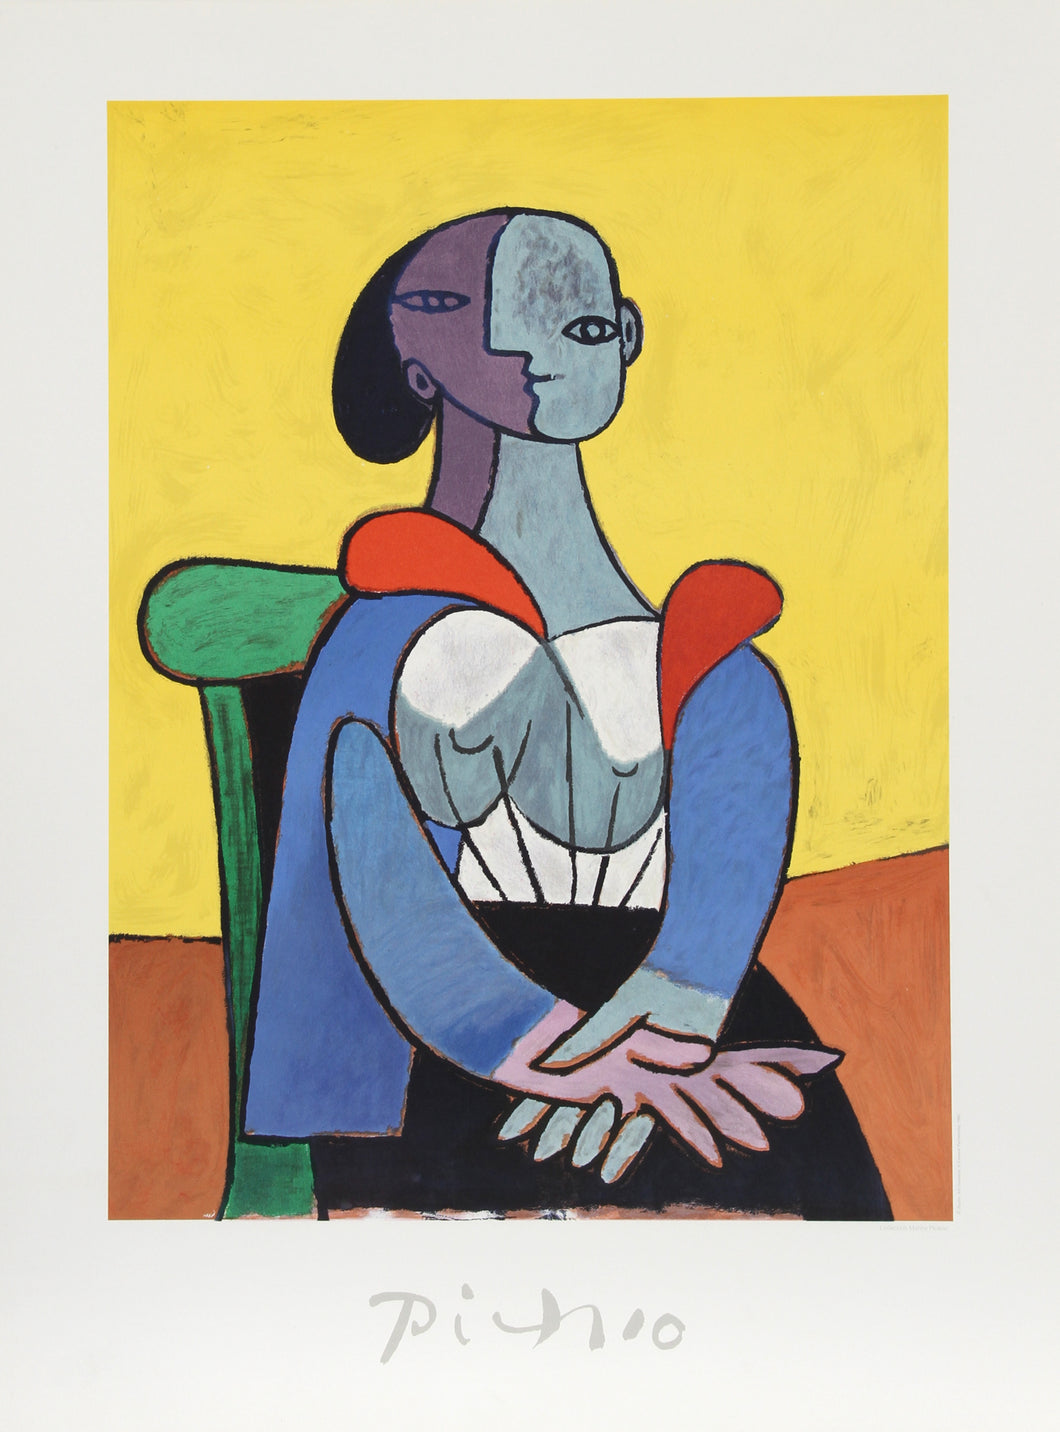 Pablo Picasso, Femme a la Chaise sur Fond Jaune, 9-C-k, Lithograph